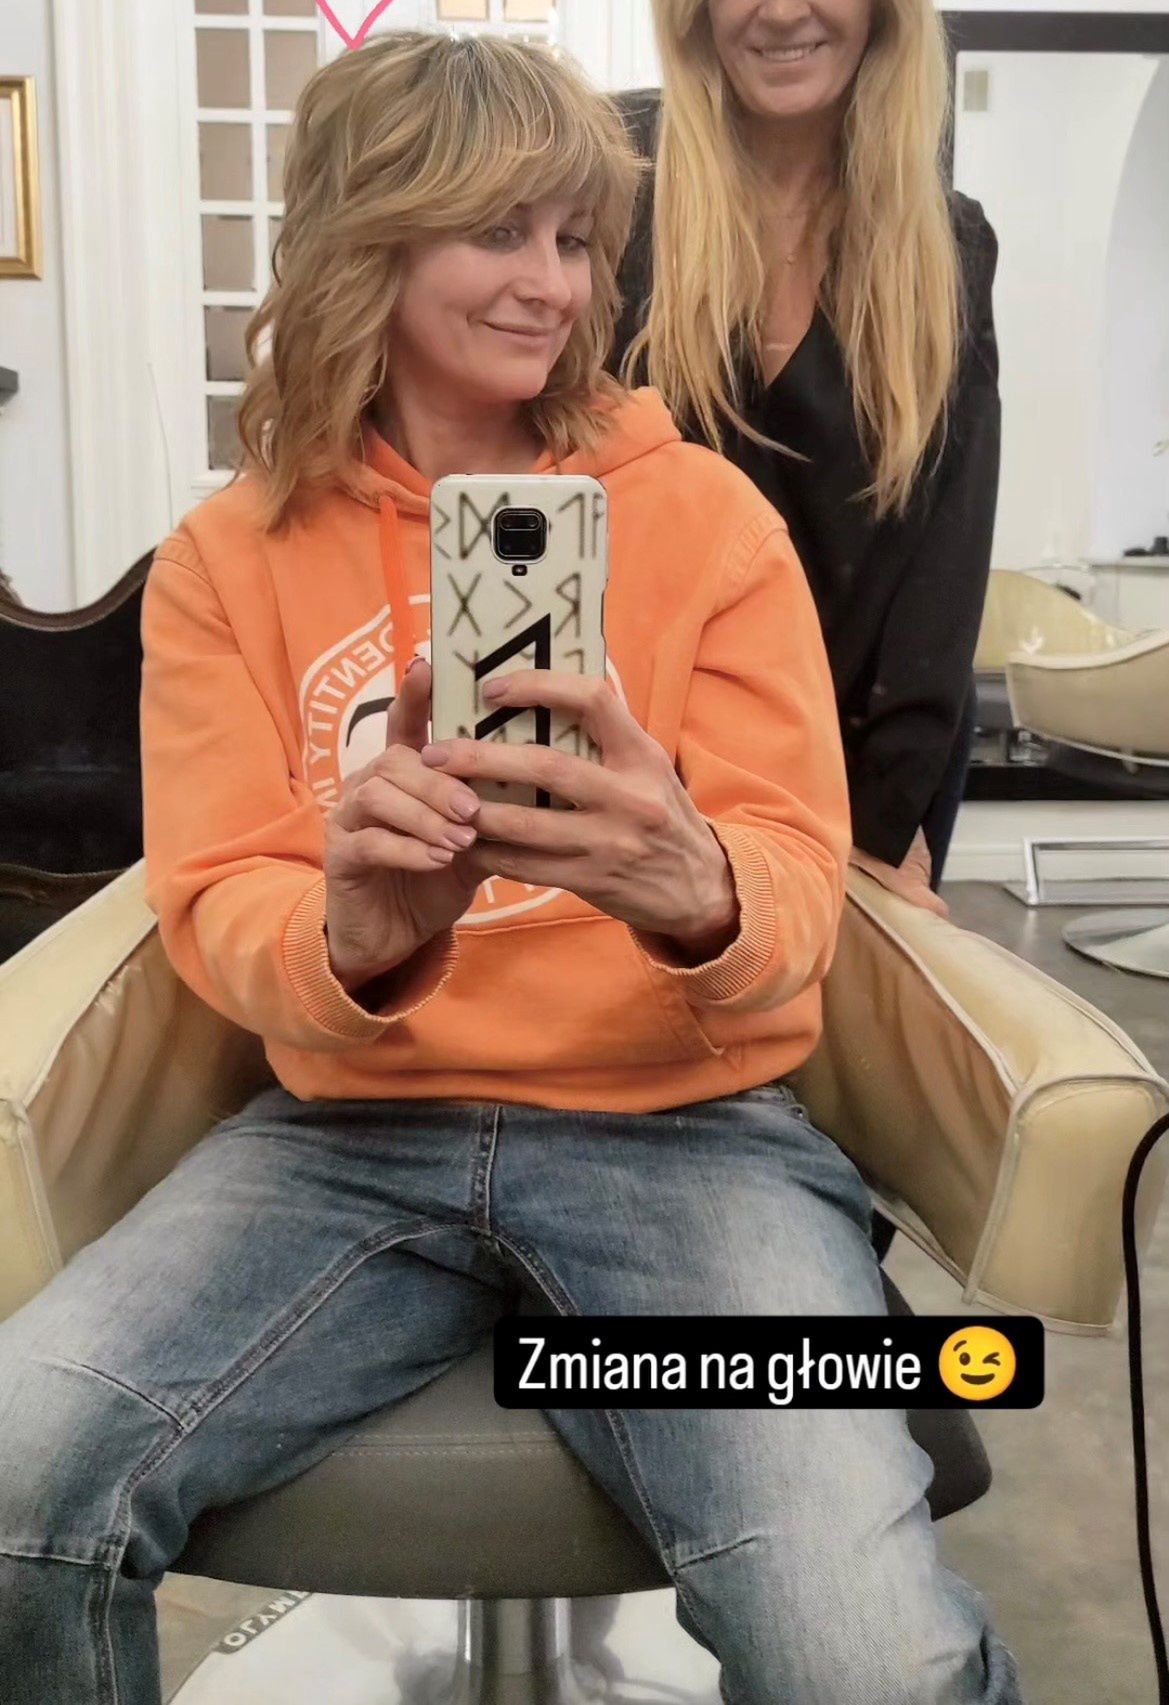 Ilona Wrońska zafundowała sobie fryzjerską metamorfozę 